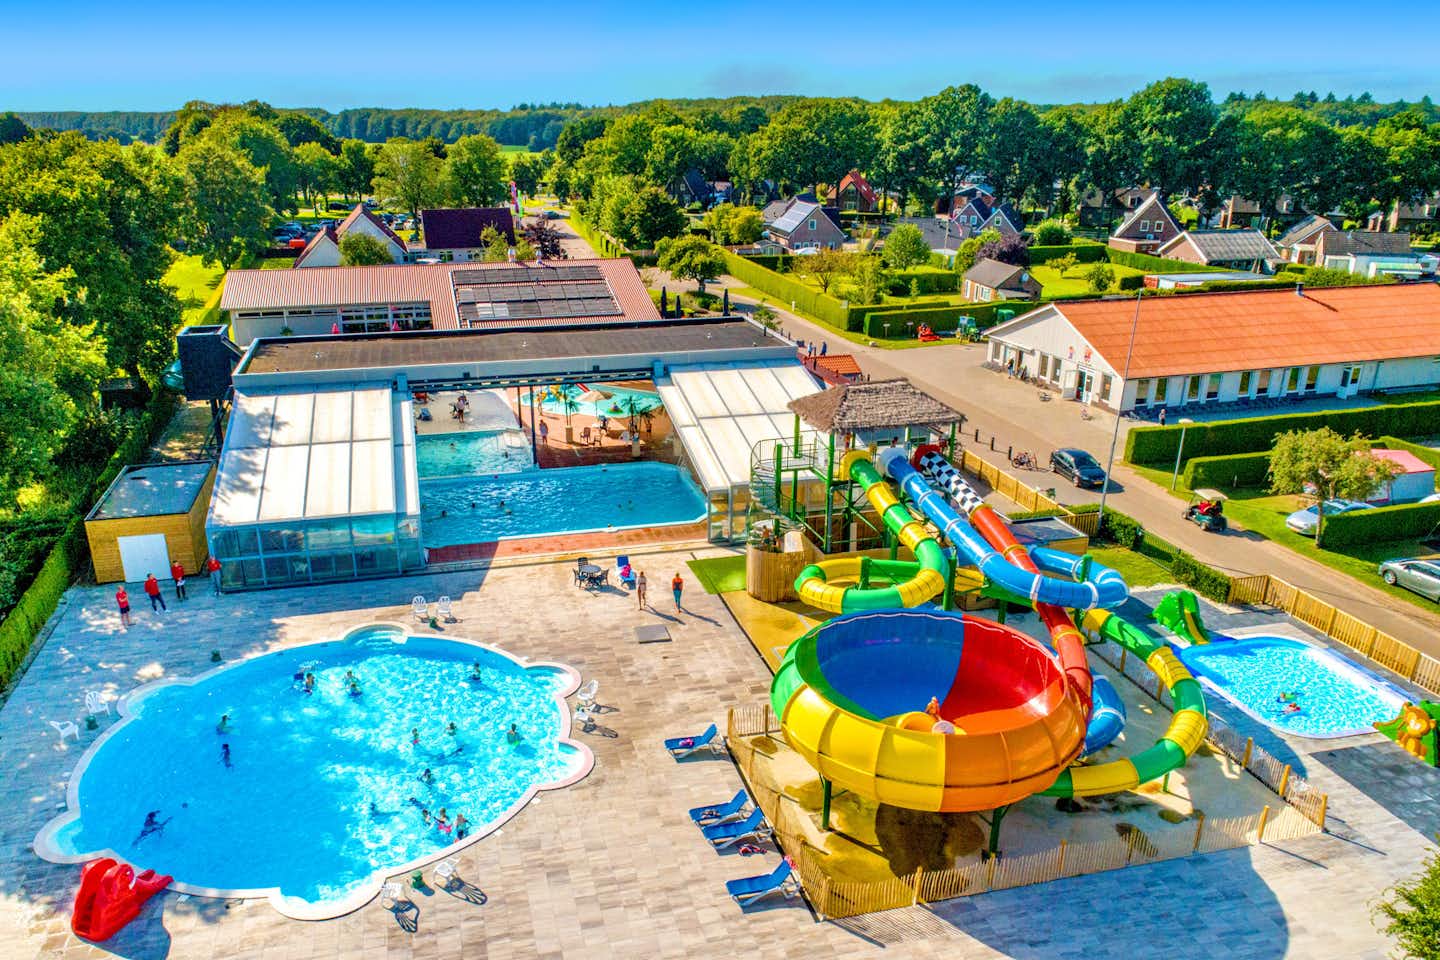 Vakantiecentrum De Fruithof - Luftaufnahme des Freibades mit Wasserrutschen